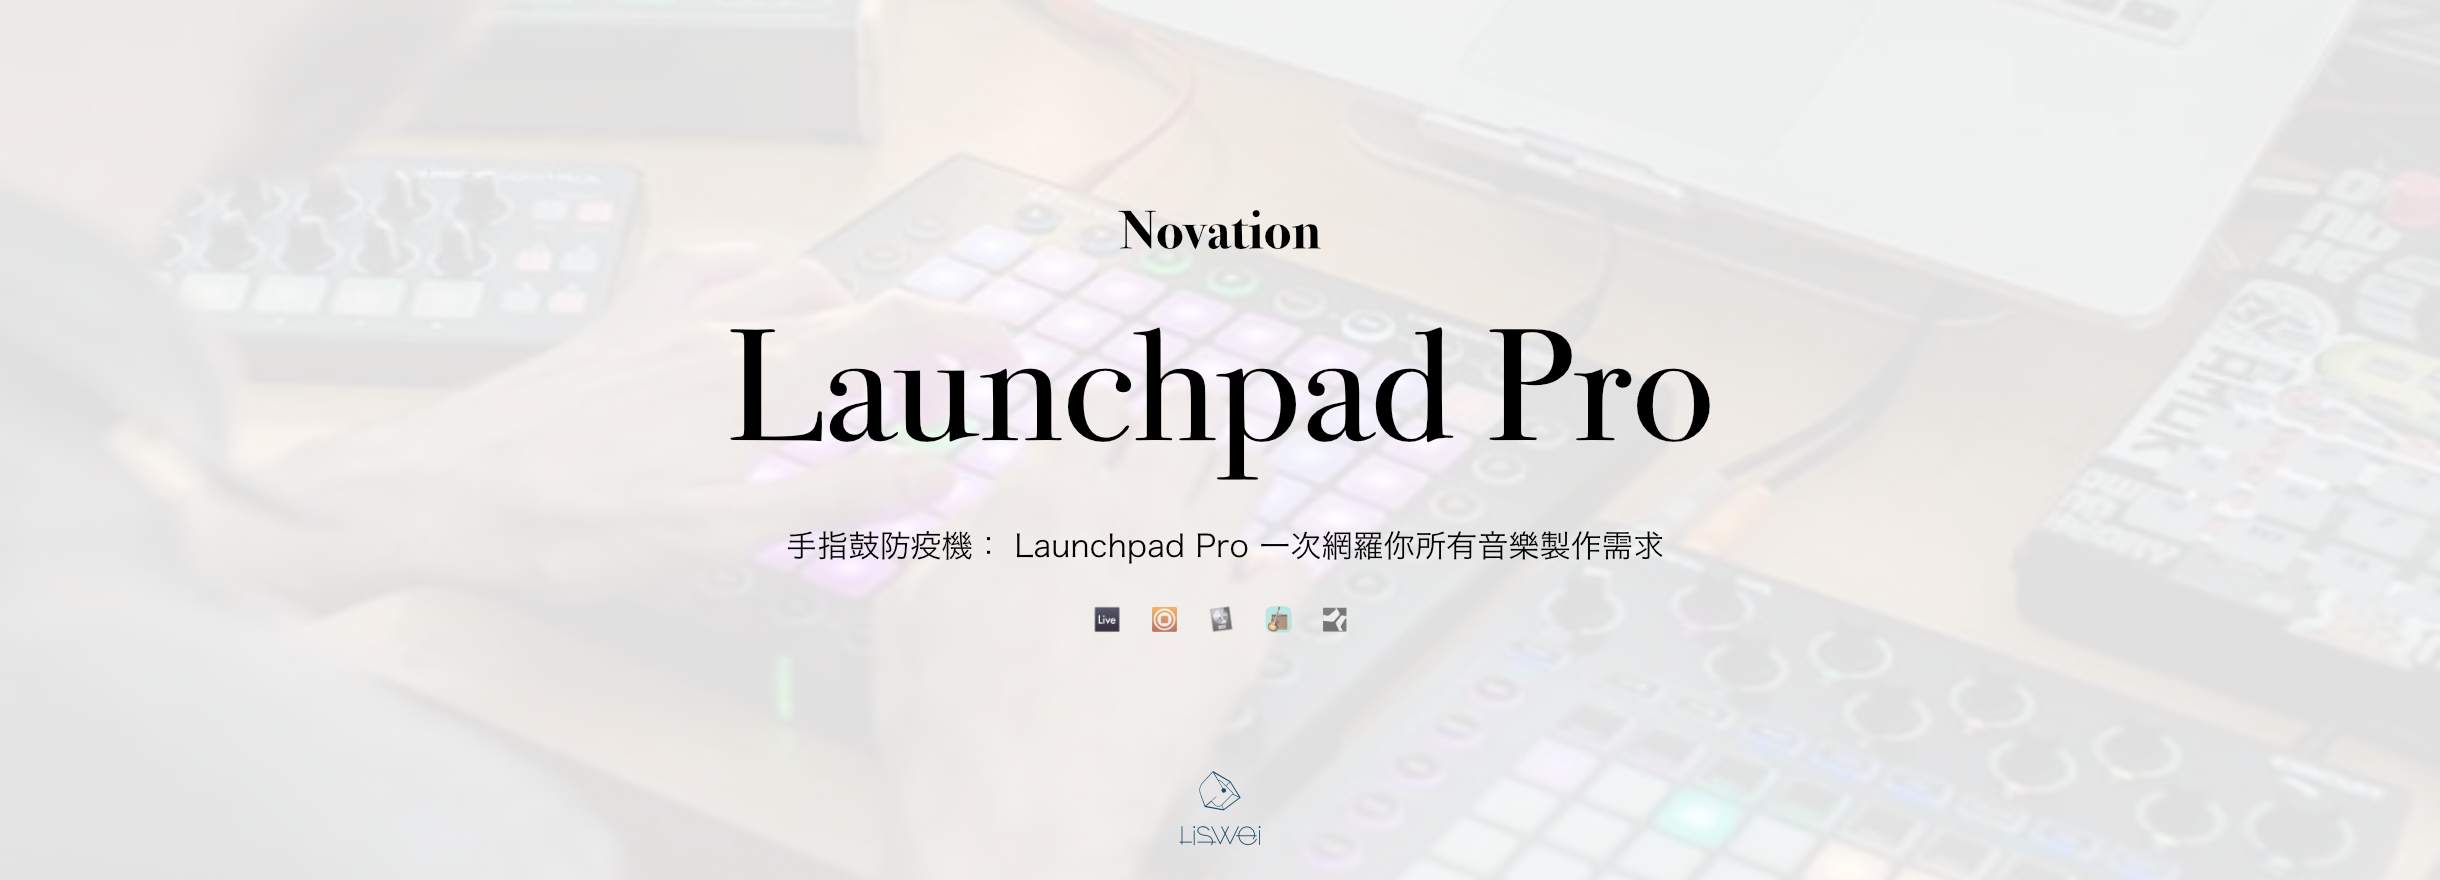 Launchpad Pro info